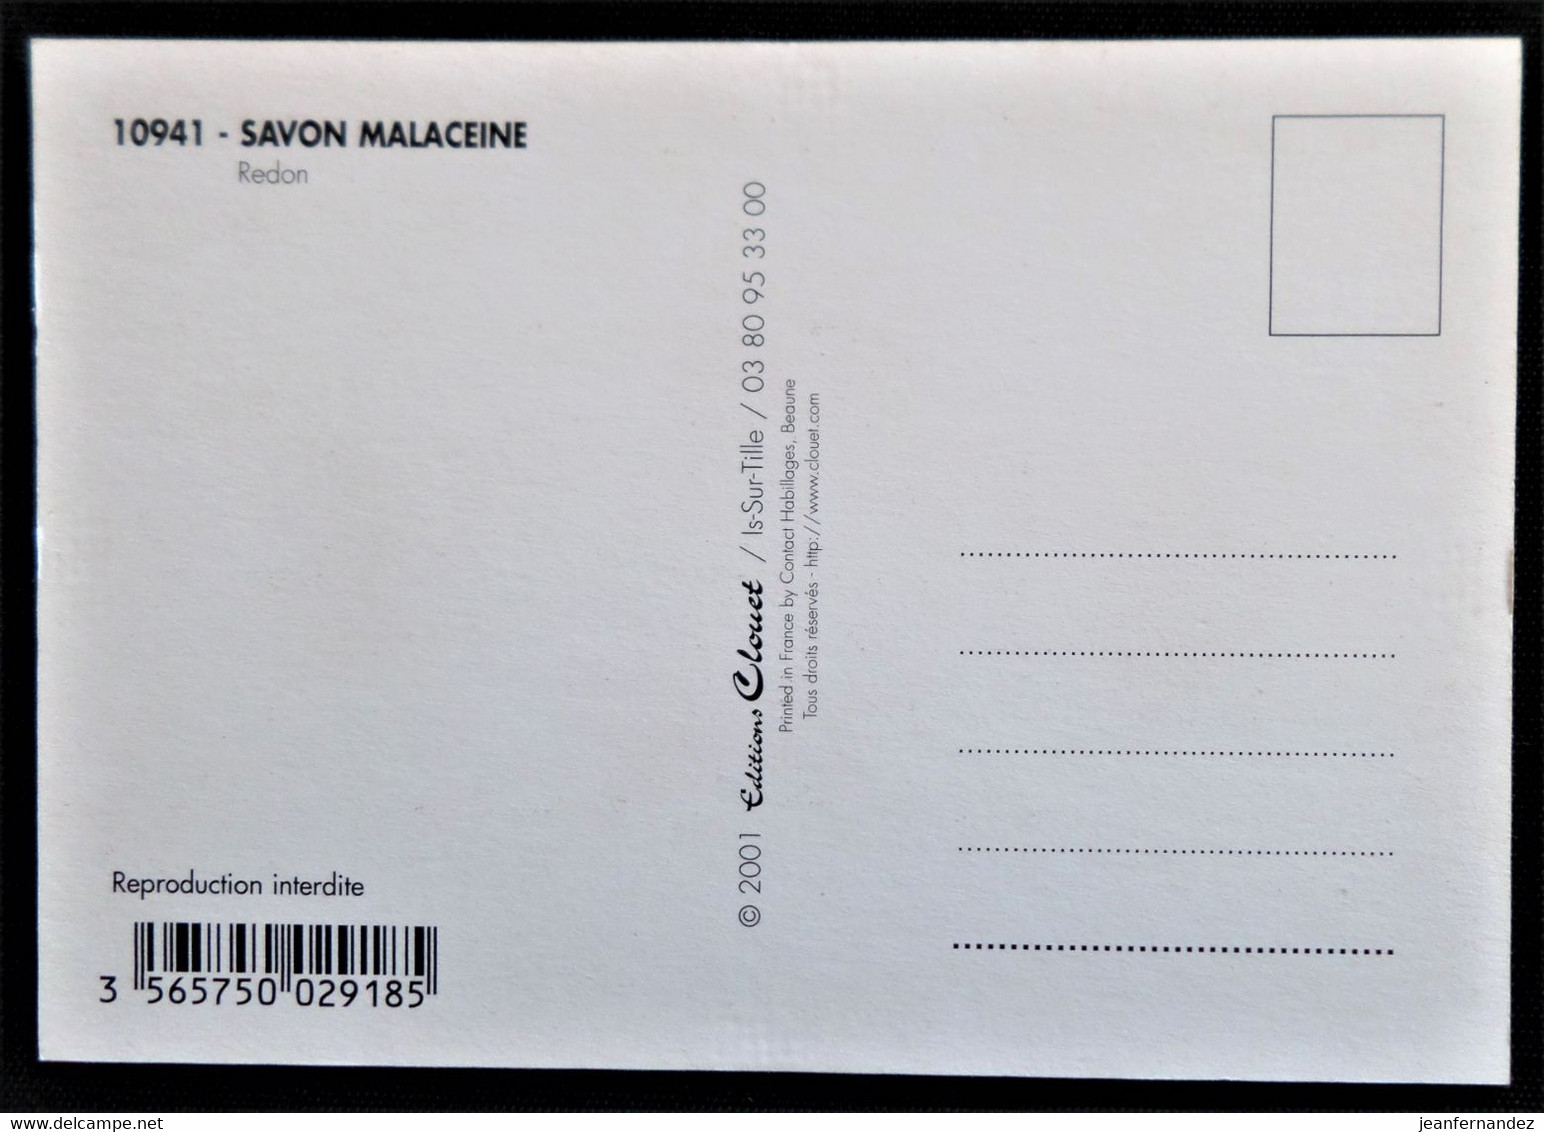 Carte Postale De Publicité Pour Savon MALACEINE - Produits De Beauté